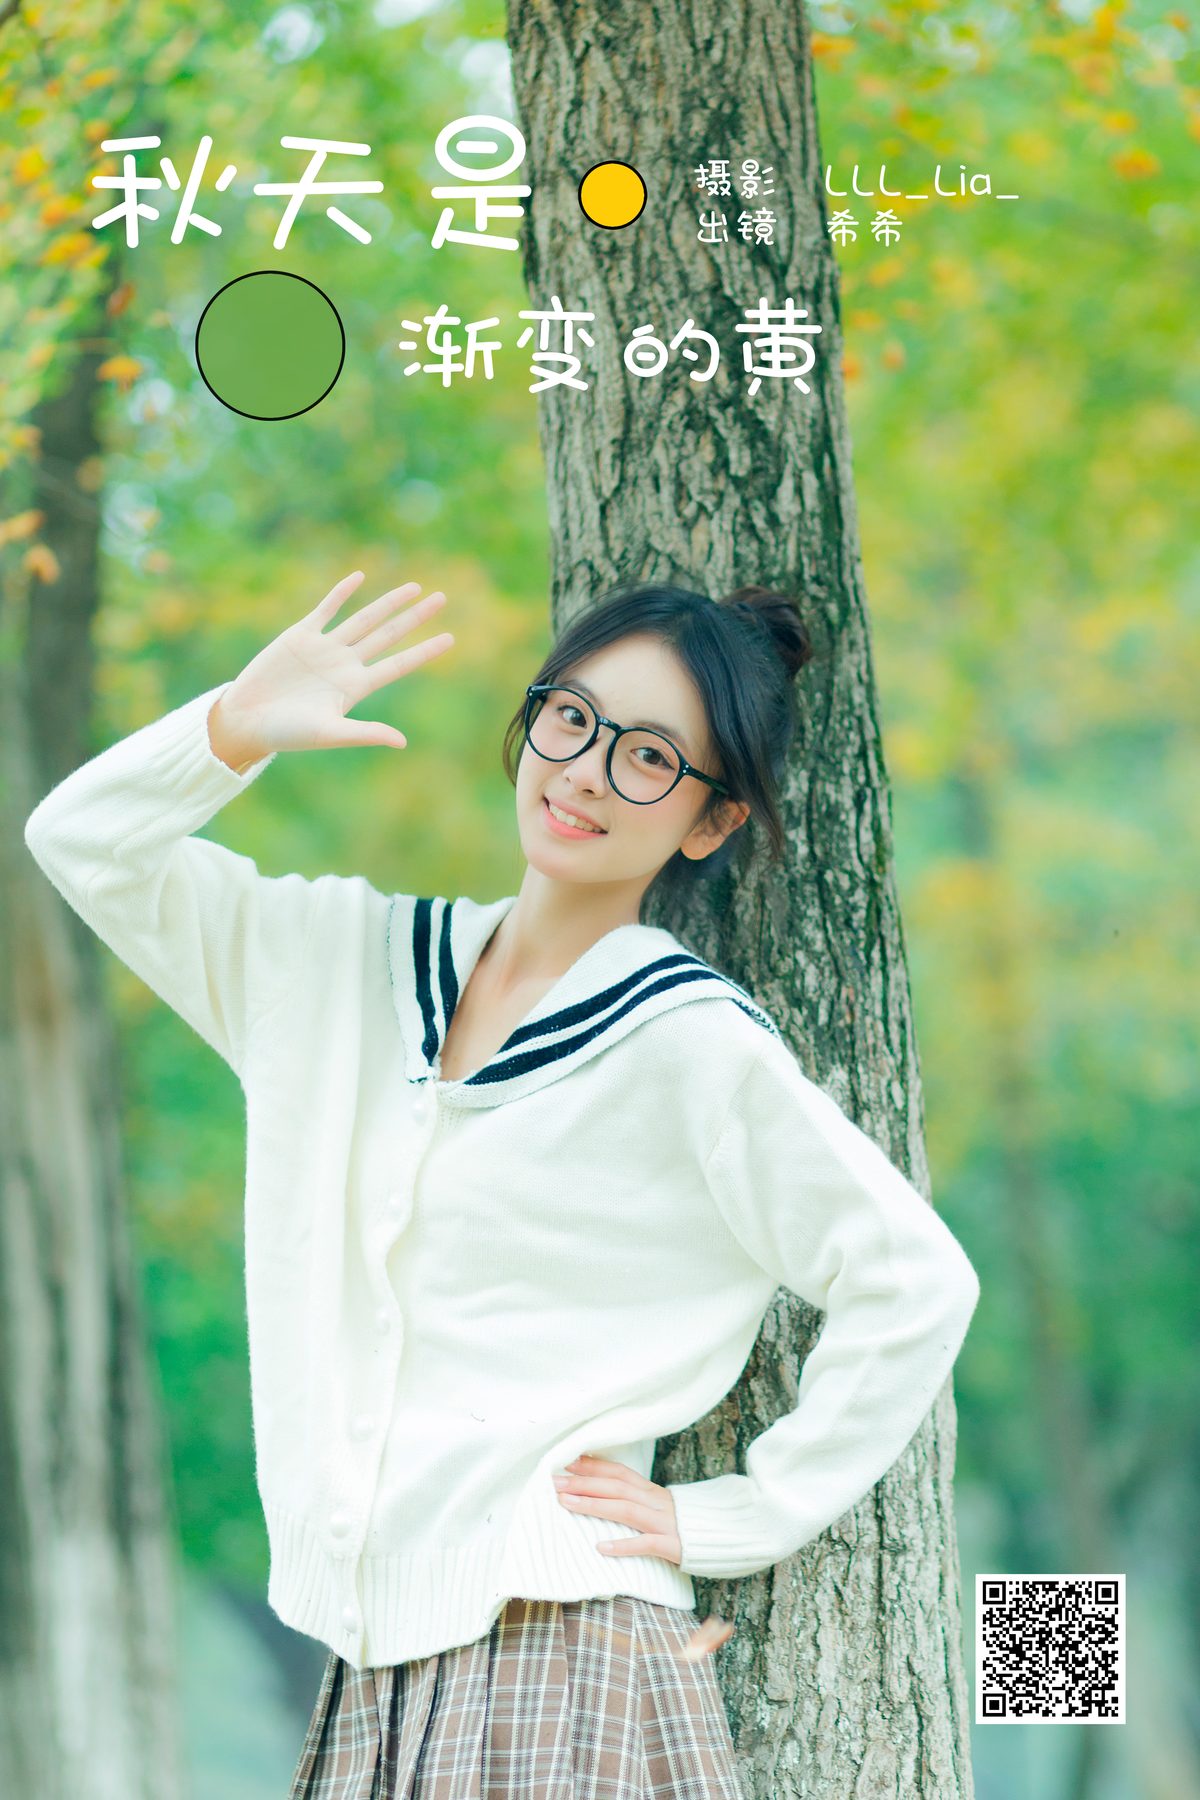 YiTuYu艺图语 Vol 5965 Xi Xi 0001 4196864558.jpg